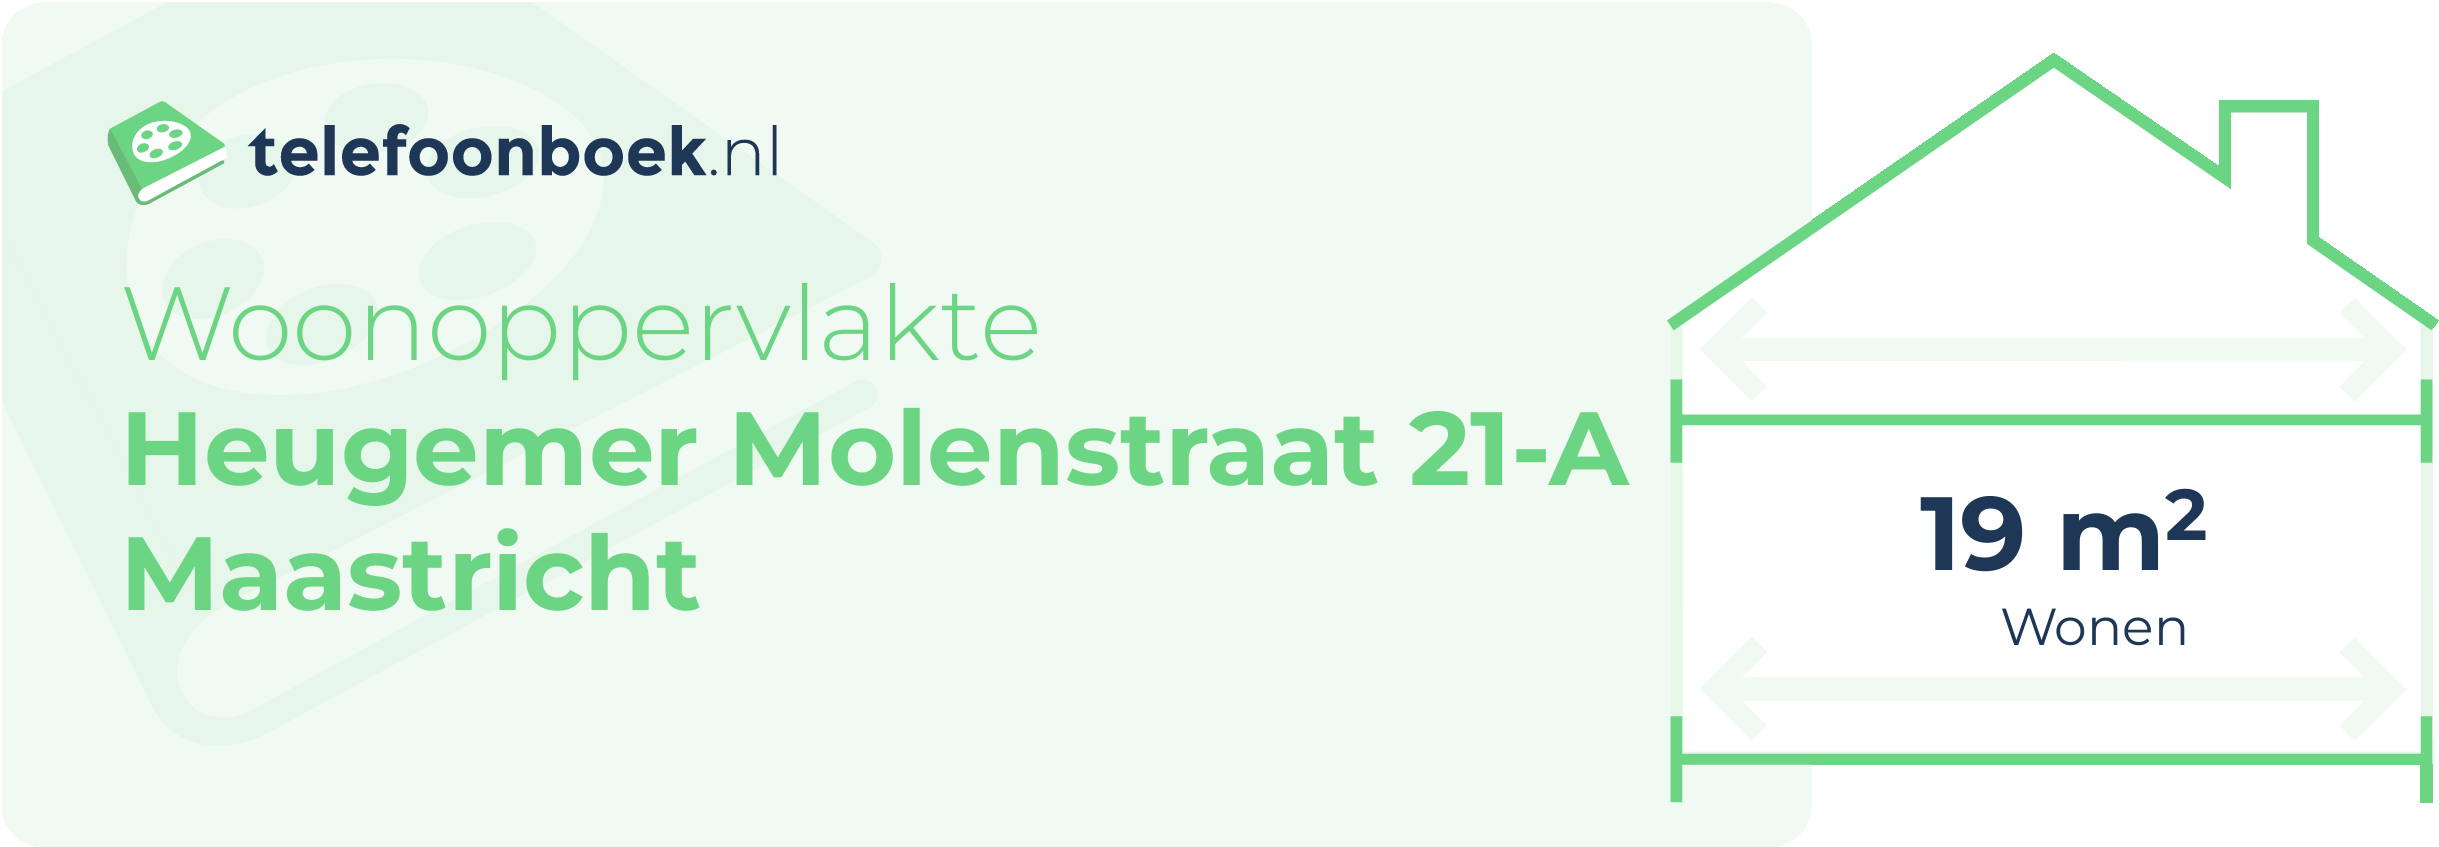 Woonoppervlakte Heugemer Molenstraat 21-A Maastricht